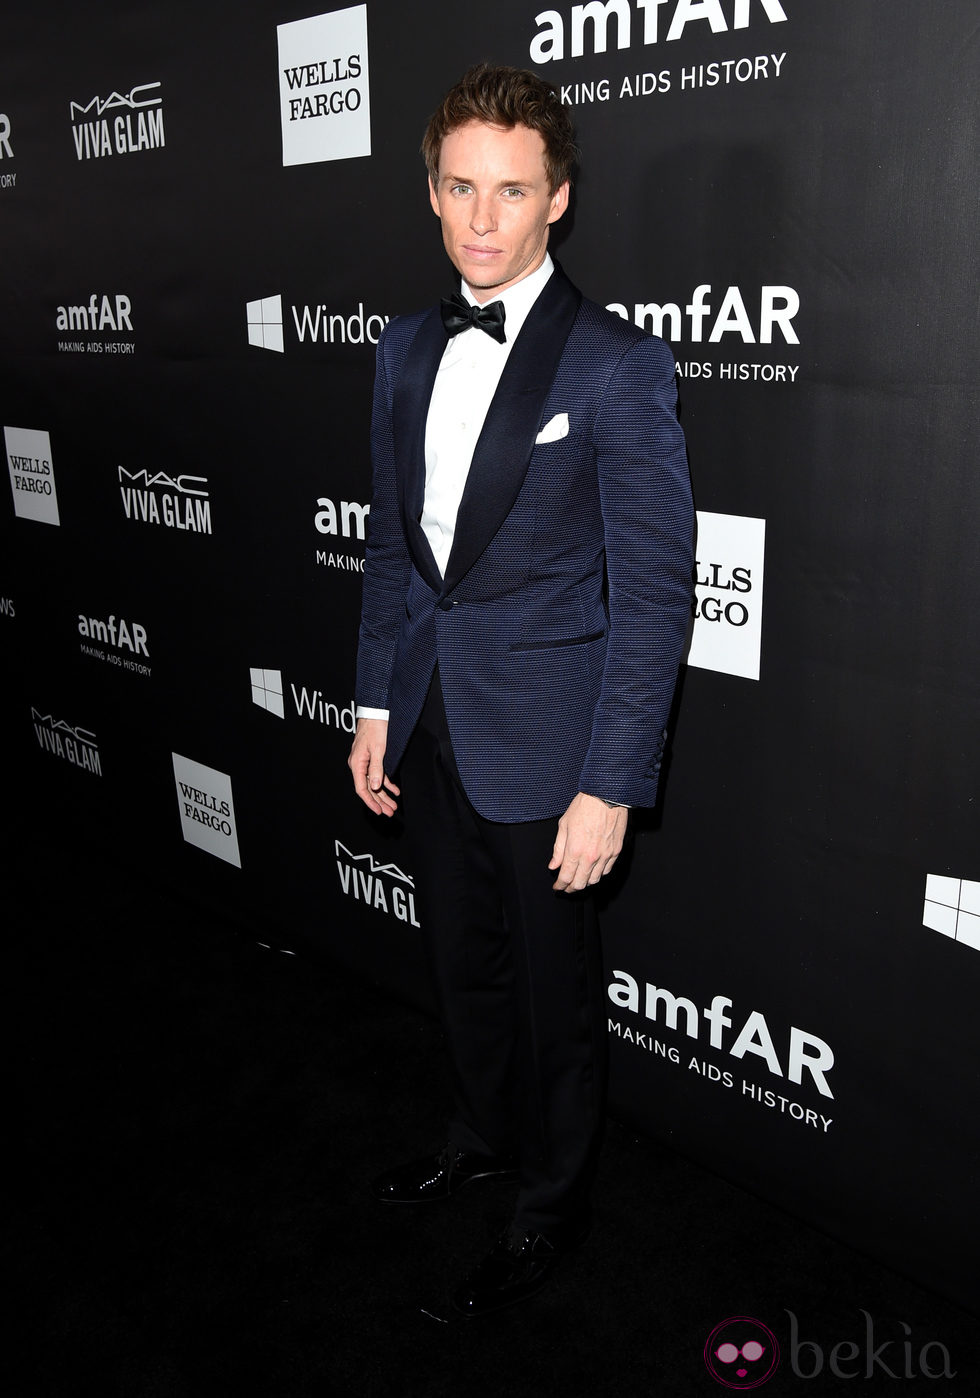 Eddie Redmayne en la 'AmfAR Inspiration Gala' 2014 en Hollywood